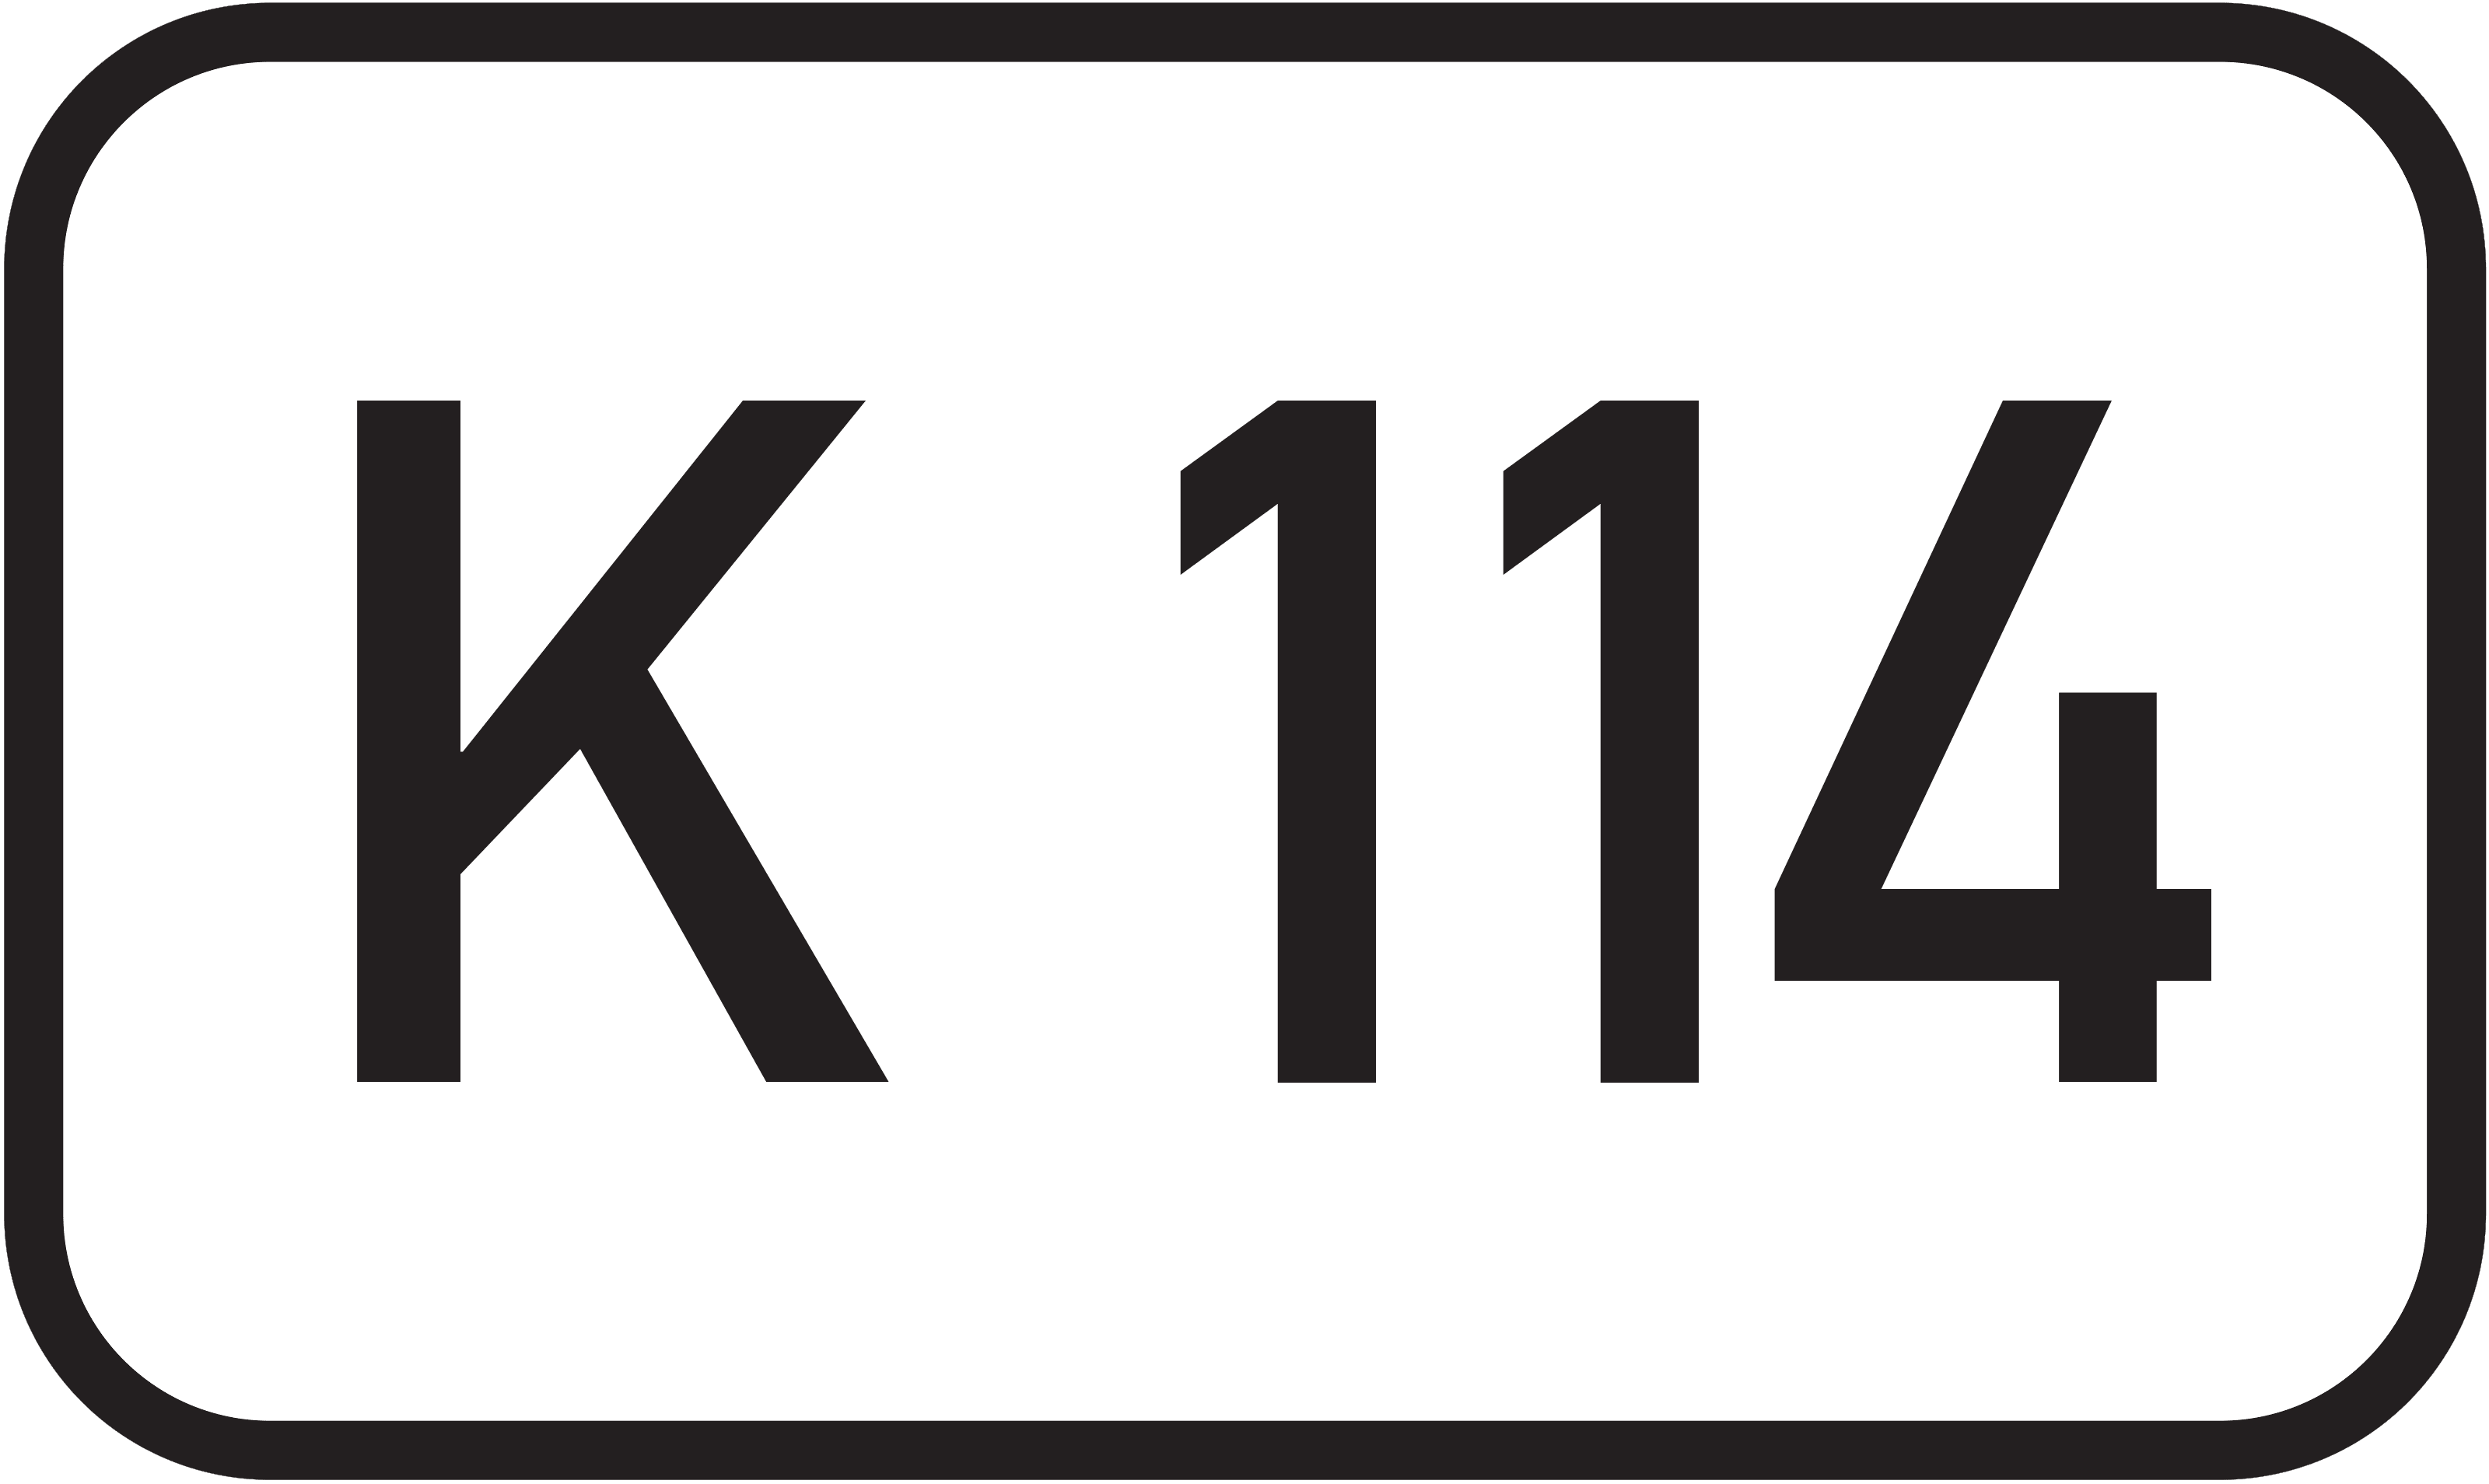 Kreisstraße K 114